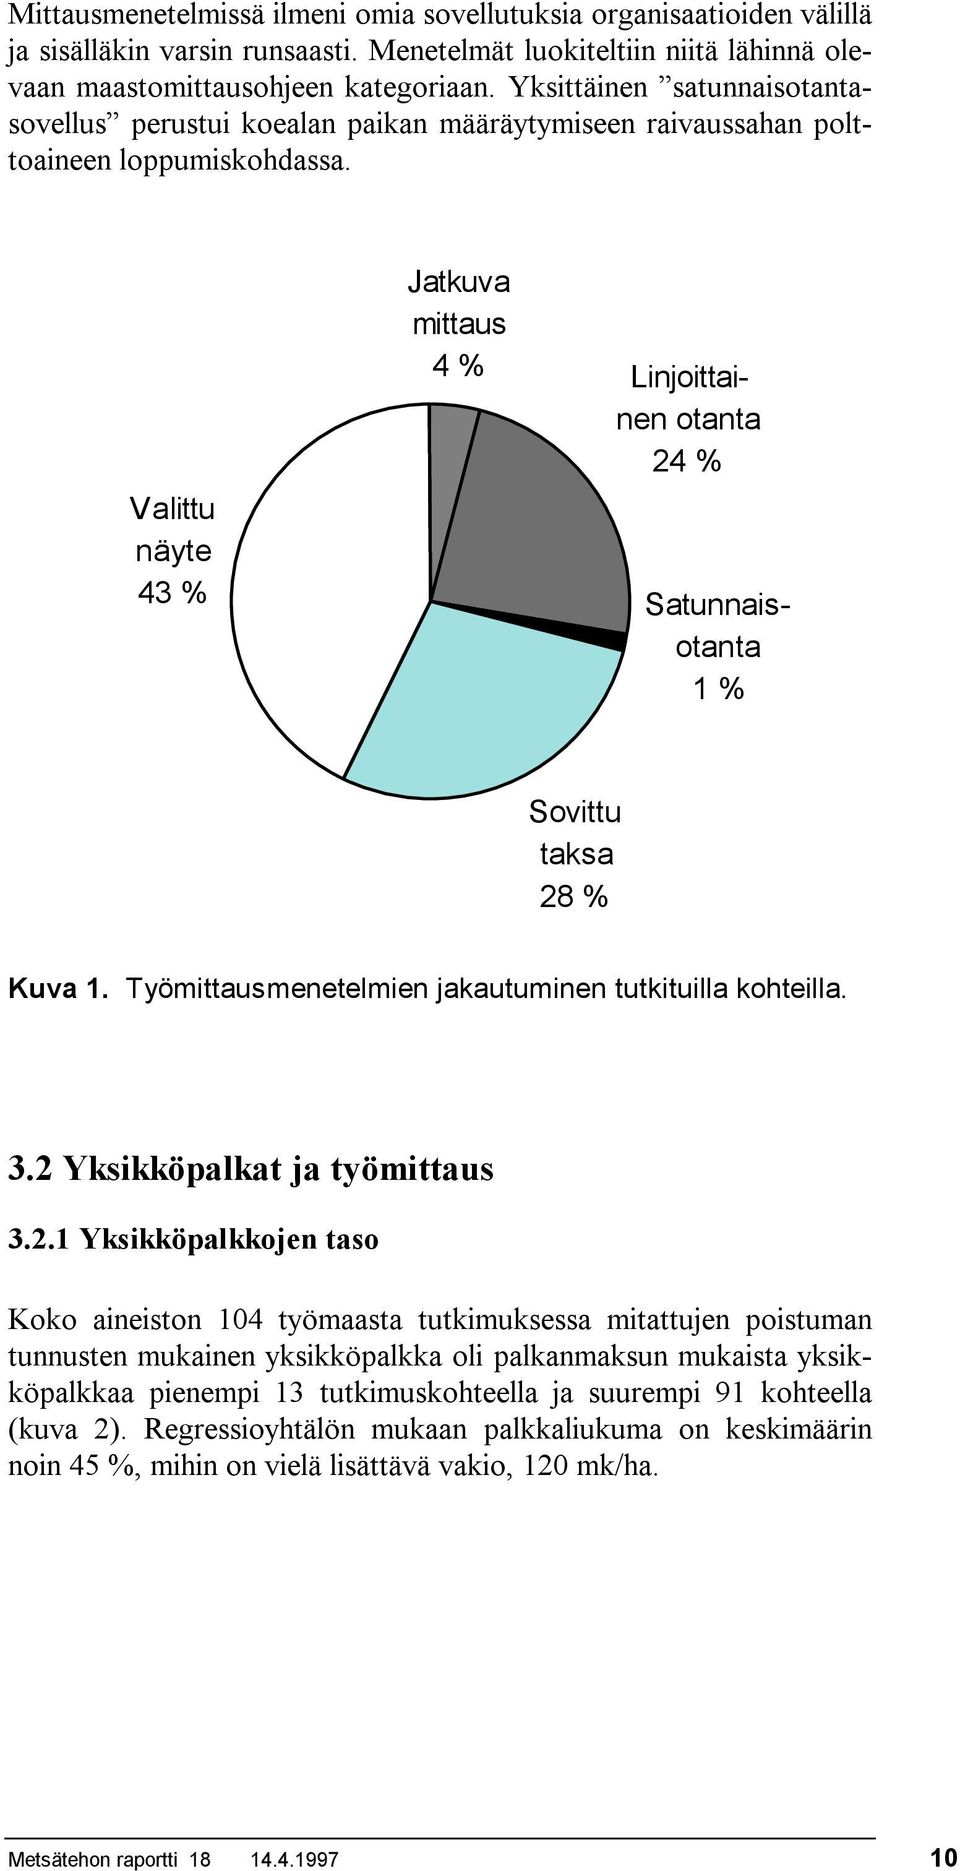 Valittu näyte 43 % Jatkuva mittaus 4 % Linjoittainen otanta 24 % Satunnaisotanta 1 % Sovittu taksa 28 % Kuva 1. Työmittausmenetelmien jakautuminen tutkituilla kohteilla. 3.